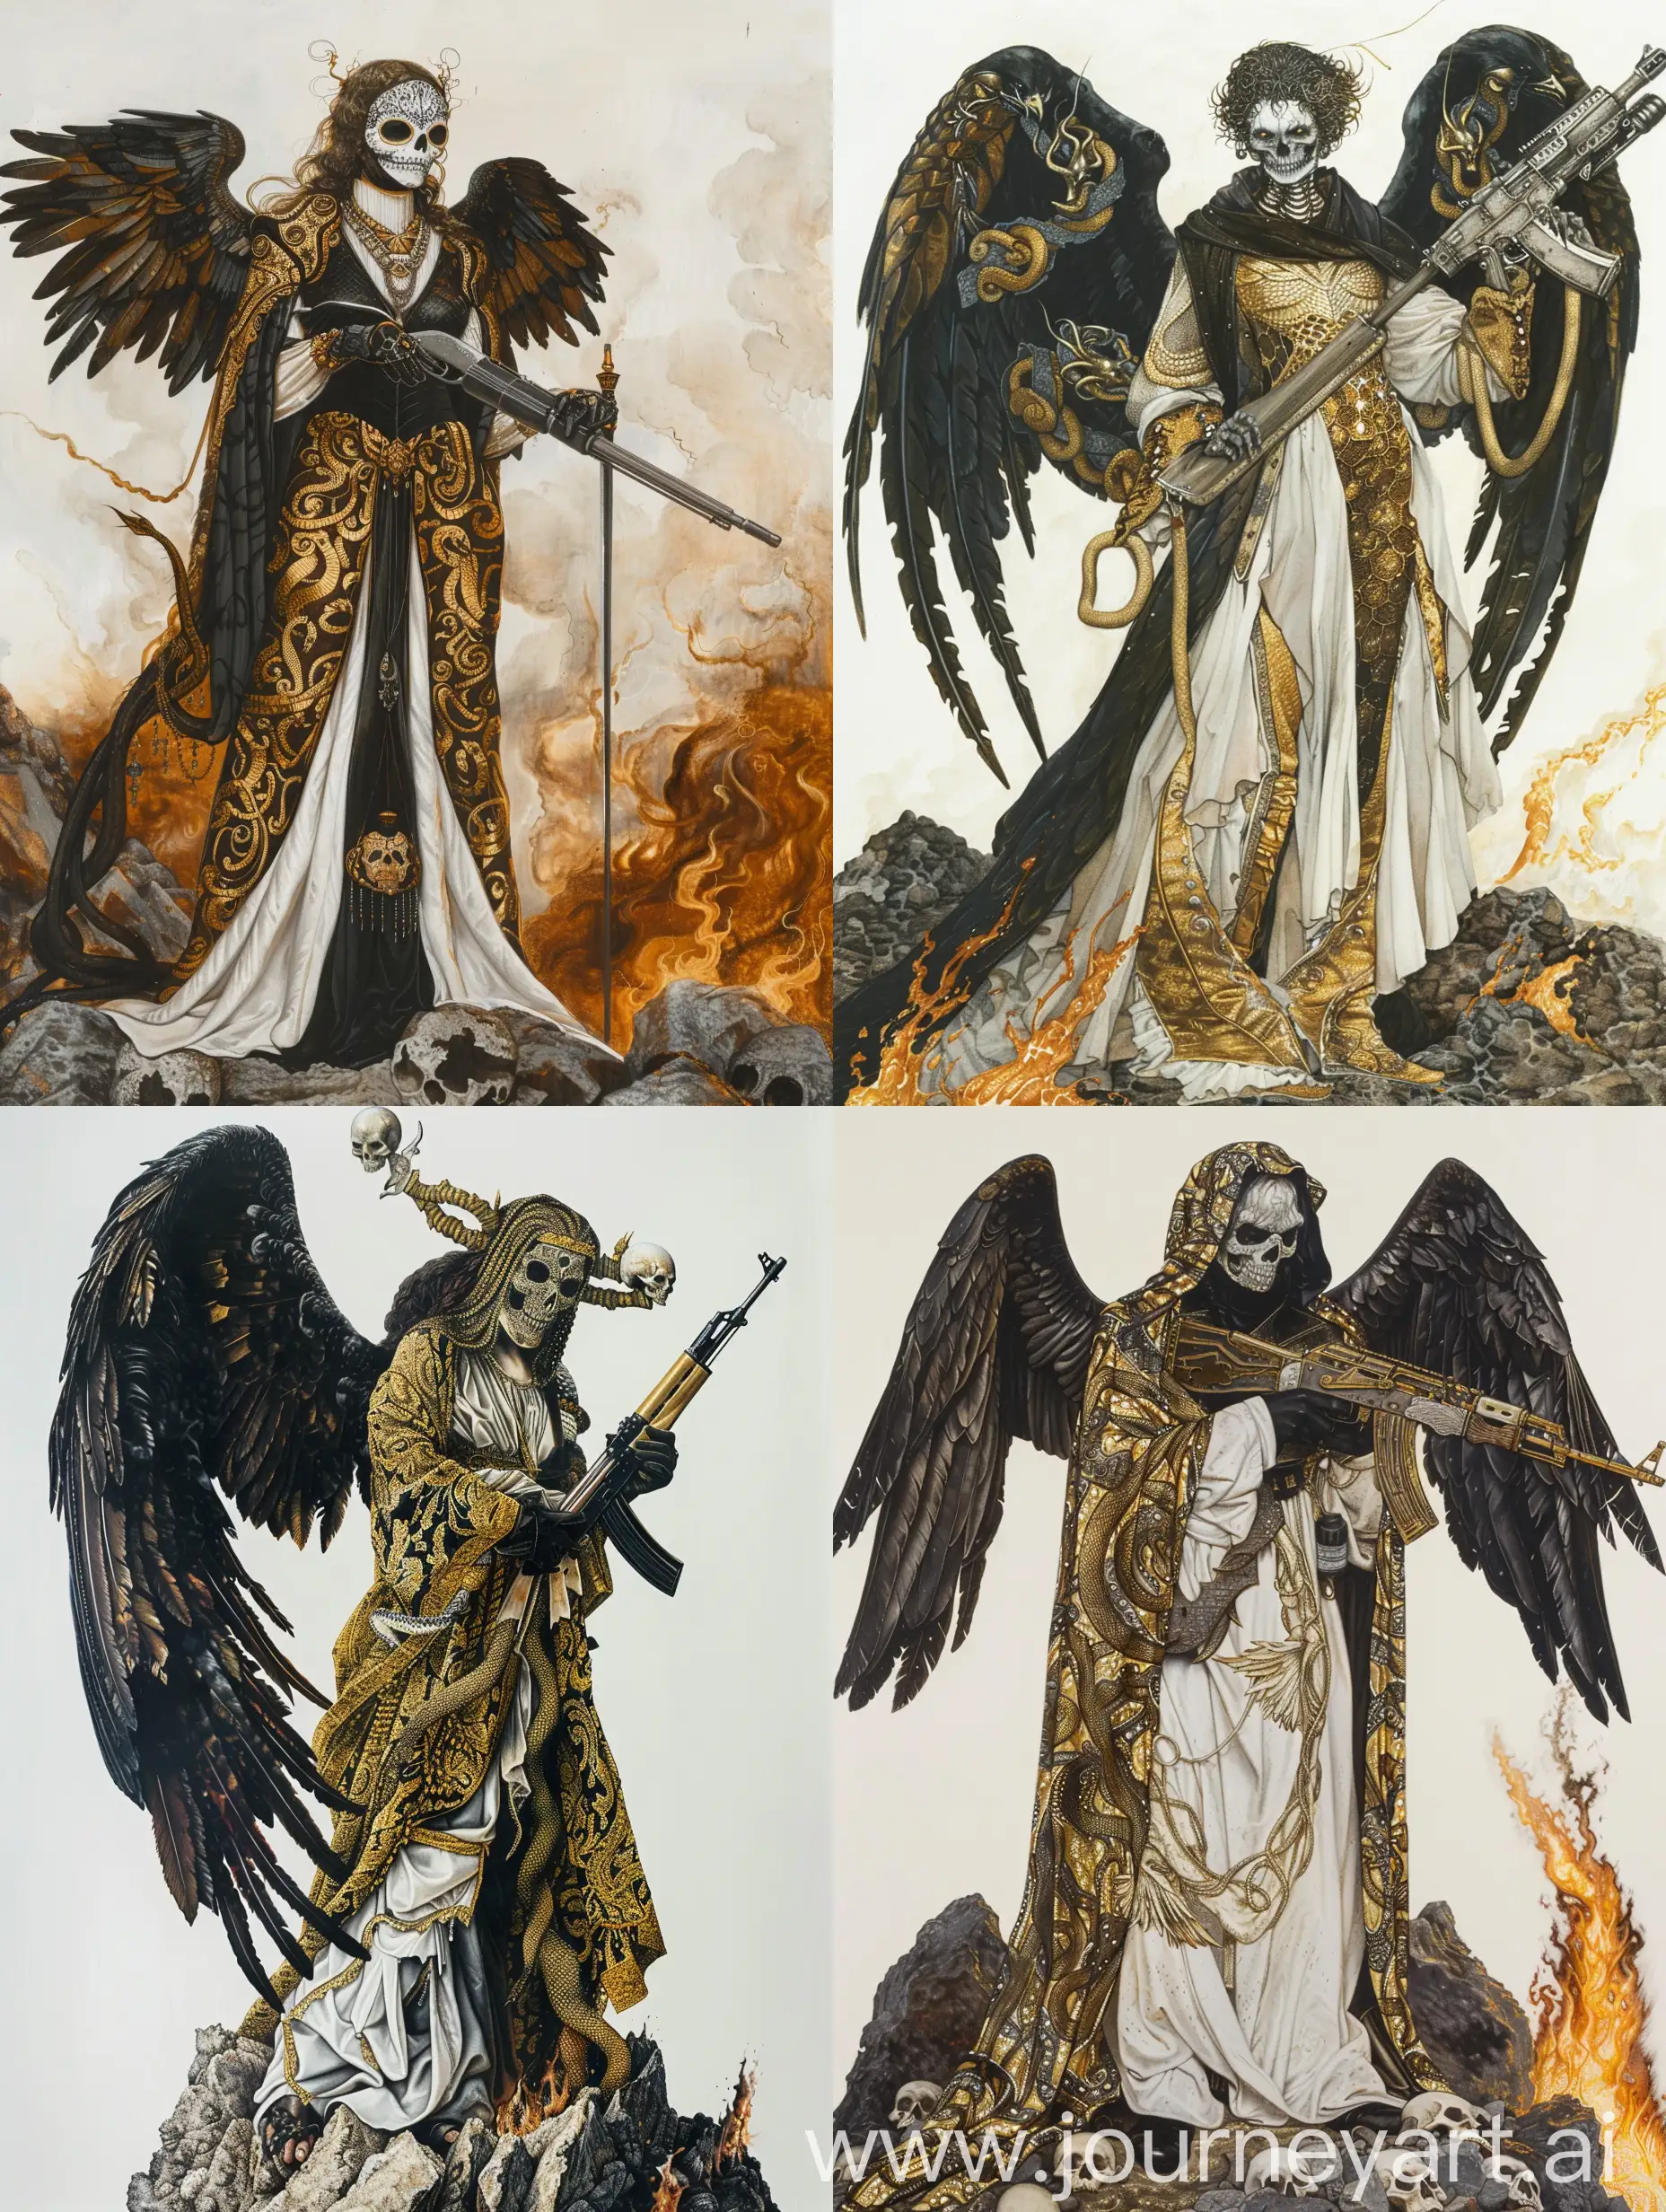 Female-Angel-Warrior-in-Ornate-Snake-and-Skull-Garb-with-Kalashnikov-on-Burning-Rocks